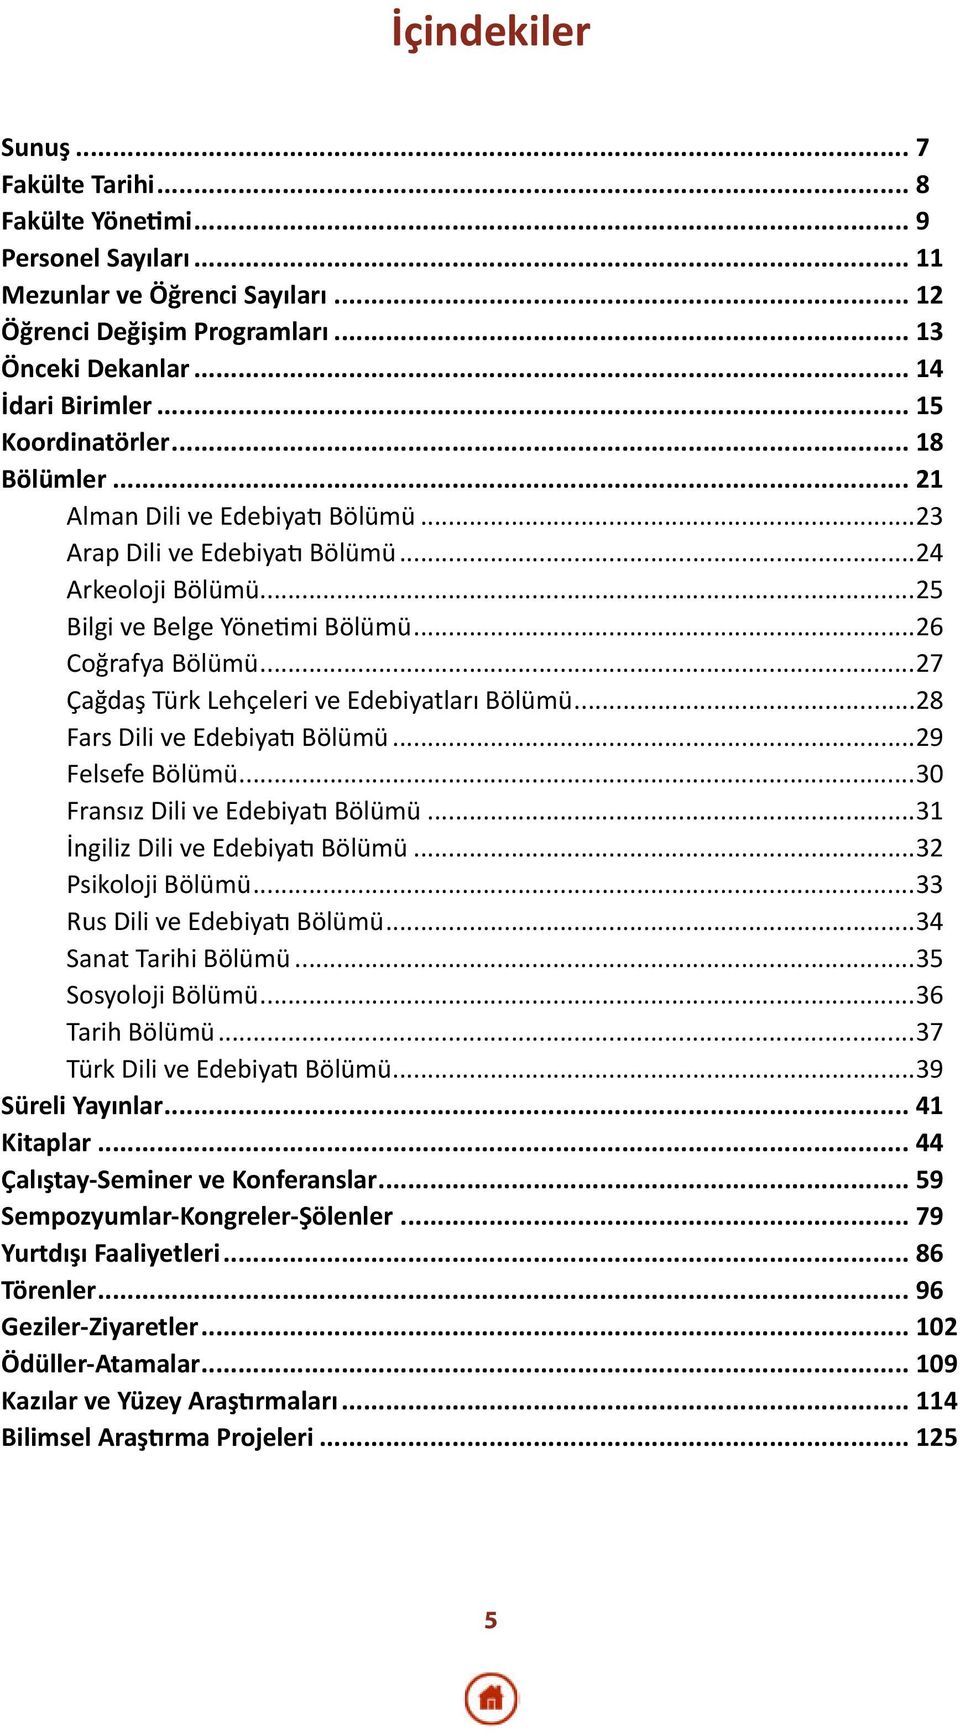 ..27 Çağdaş Türk Lehçeleri ve Edebiyatları Bölümü...28 Fars Dili ve Edebiyatı Bölümü...29 Felsefe Bölümü...30 Fransız Dili ve Edebiyatı Bölümü...31 İngiliz Dili ve Edebiyatı Bölümü.